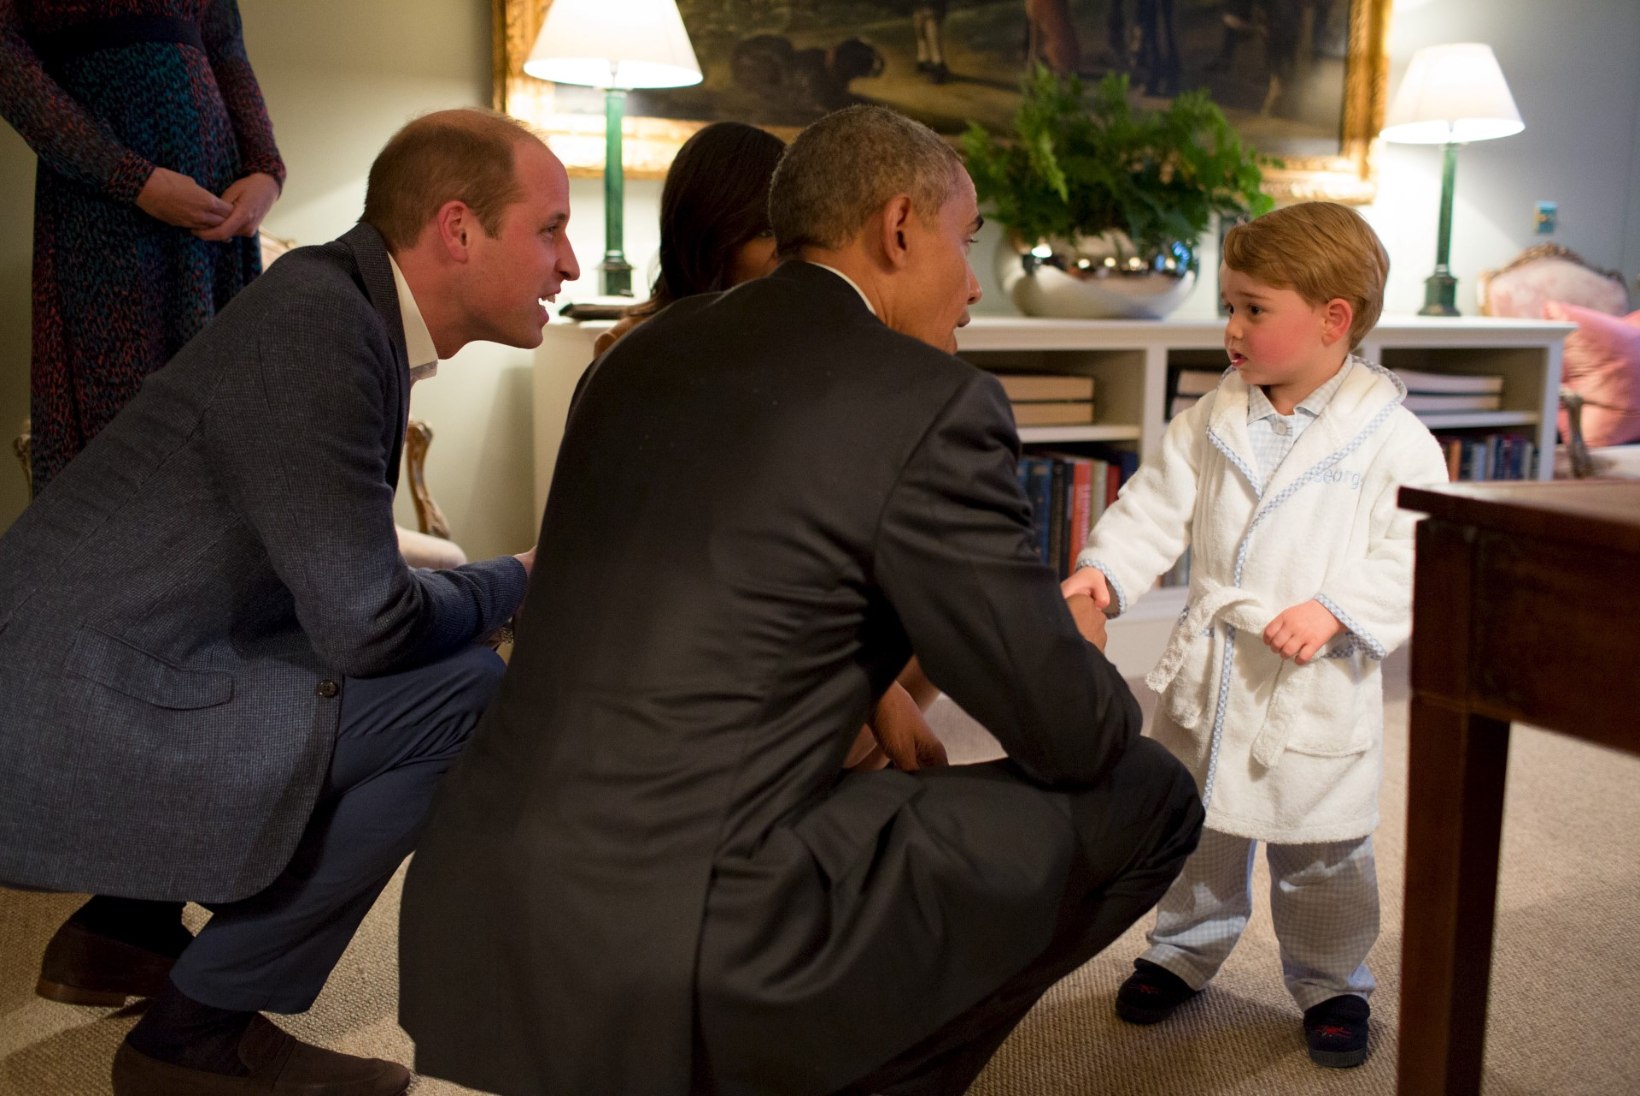 FOTOD | Briti pisiprints tänas Obamat, kes talle ligi kolm aastat tagasi kiikhobuse kinkis